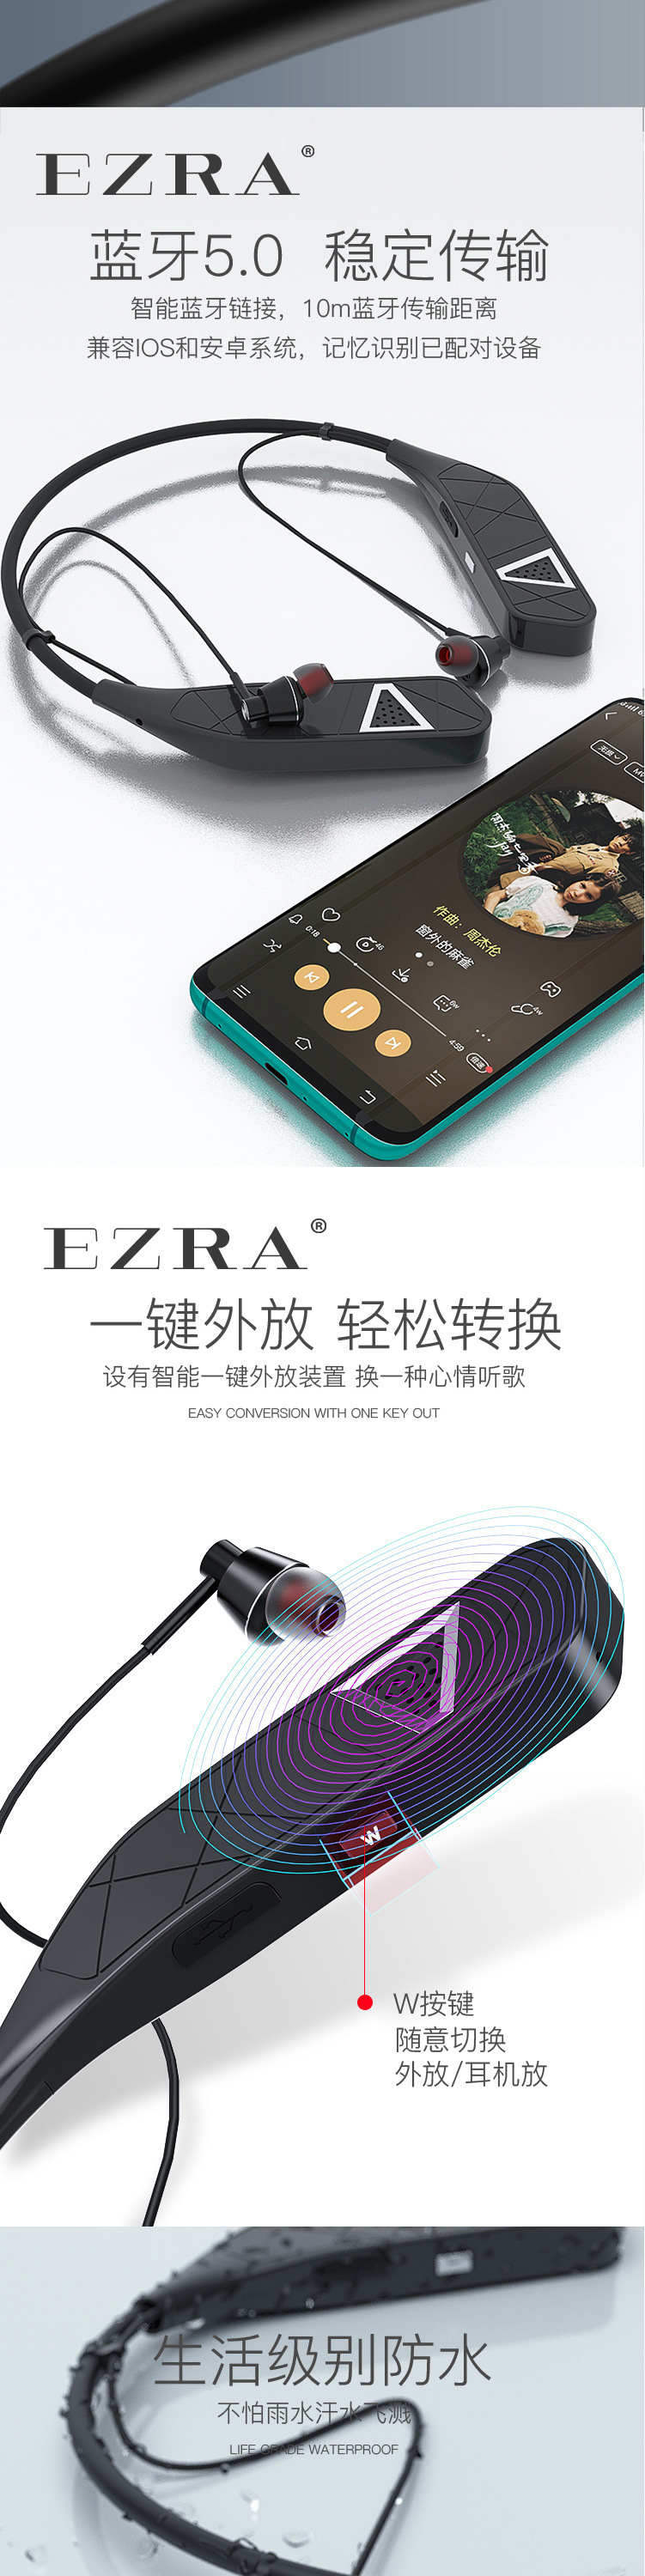 EZRA新款颈戴式无线蓝牙耳机音箱耳机二合一超强续航挂脖运动耳机舒适佩戴详情7